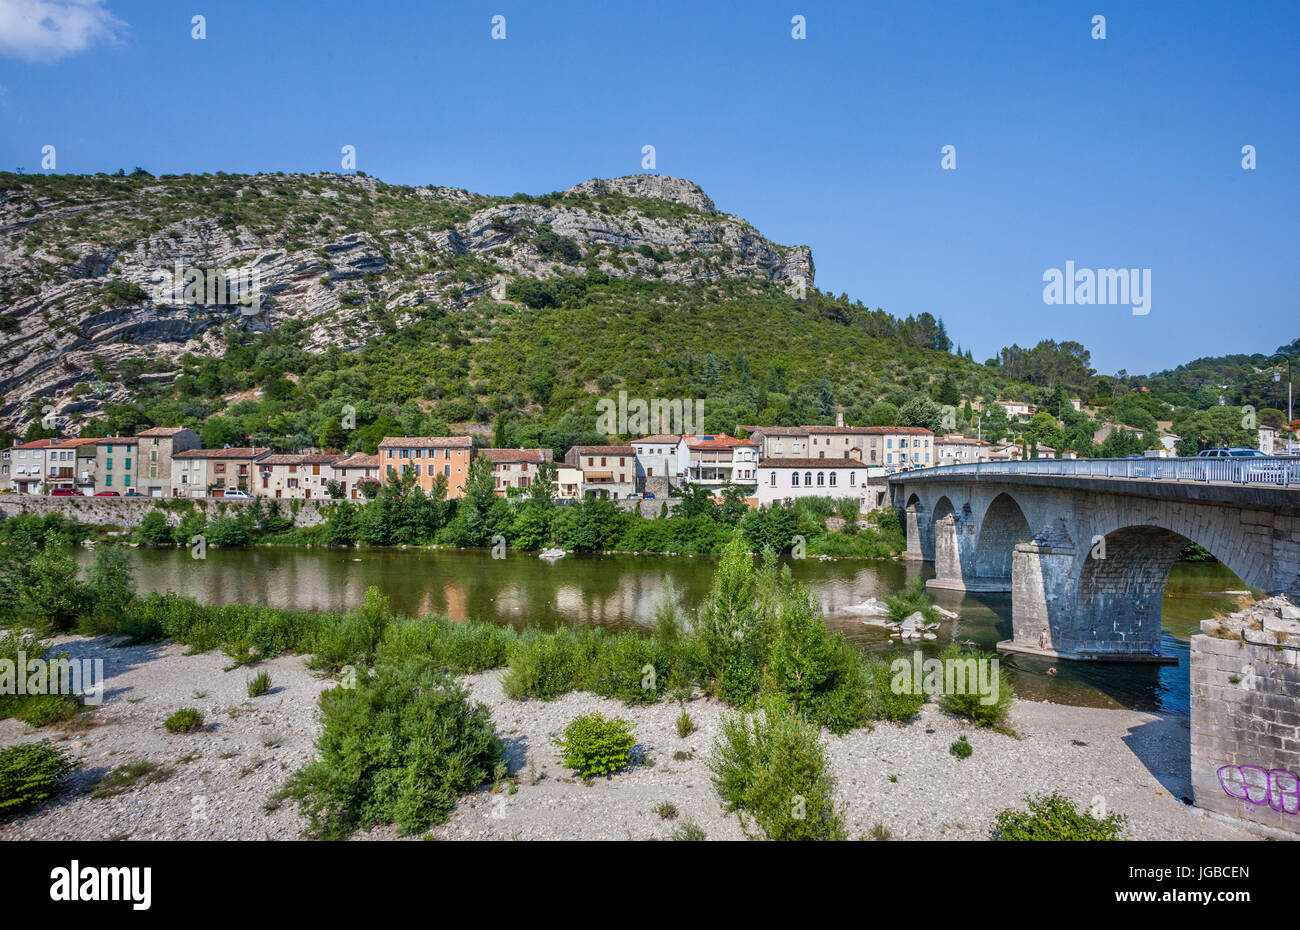 Francia, Languedoc-Rosellón, departamento de Gard, Anduze, puente sobre el río Gardon d'Anduze Foto de stock